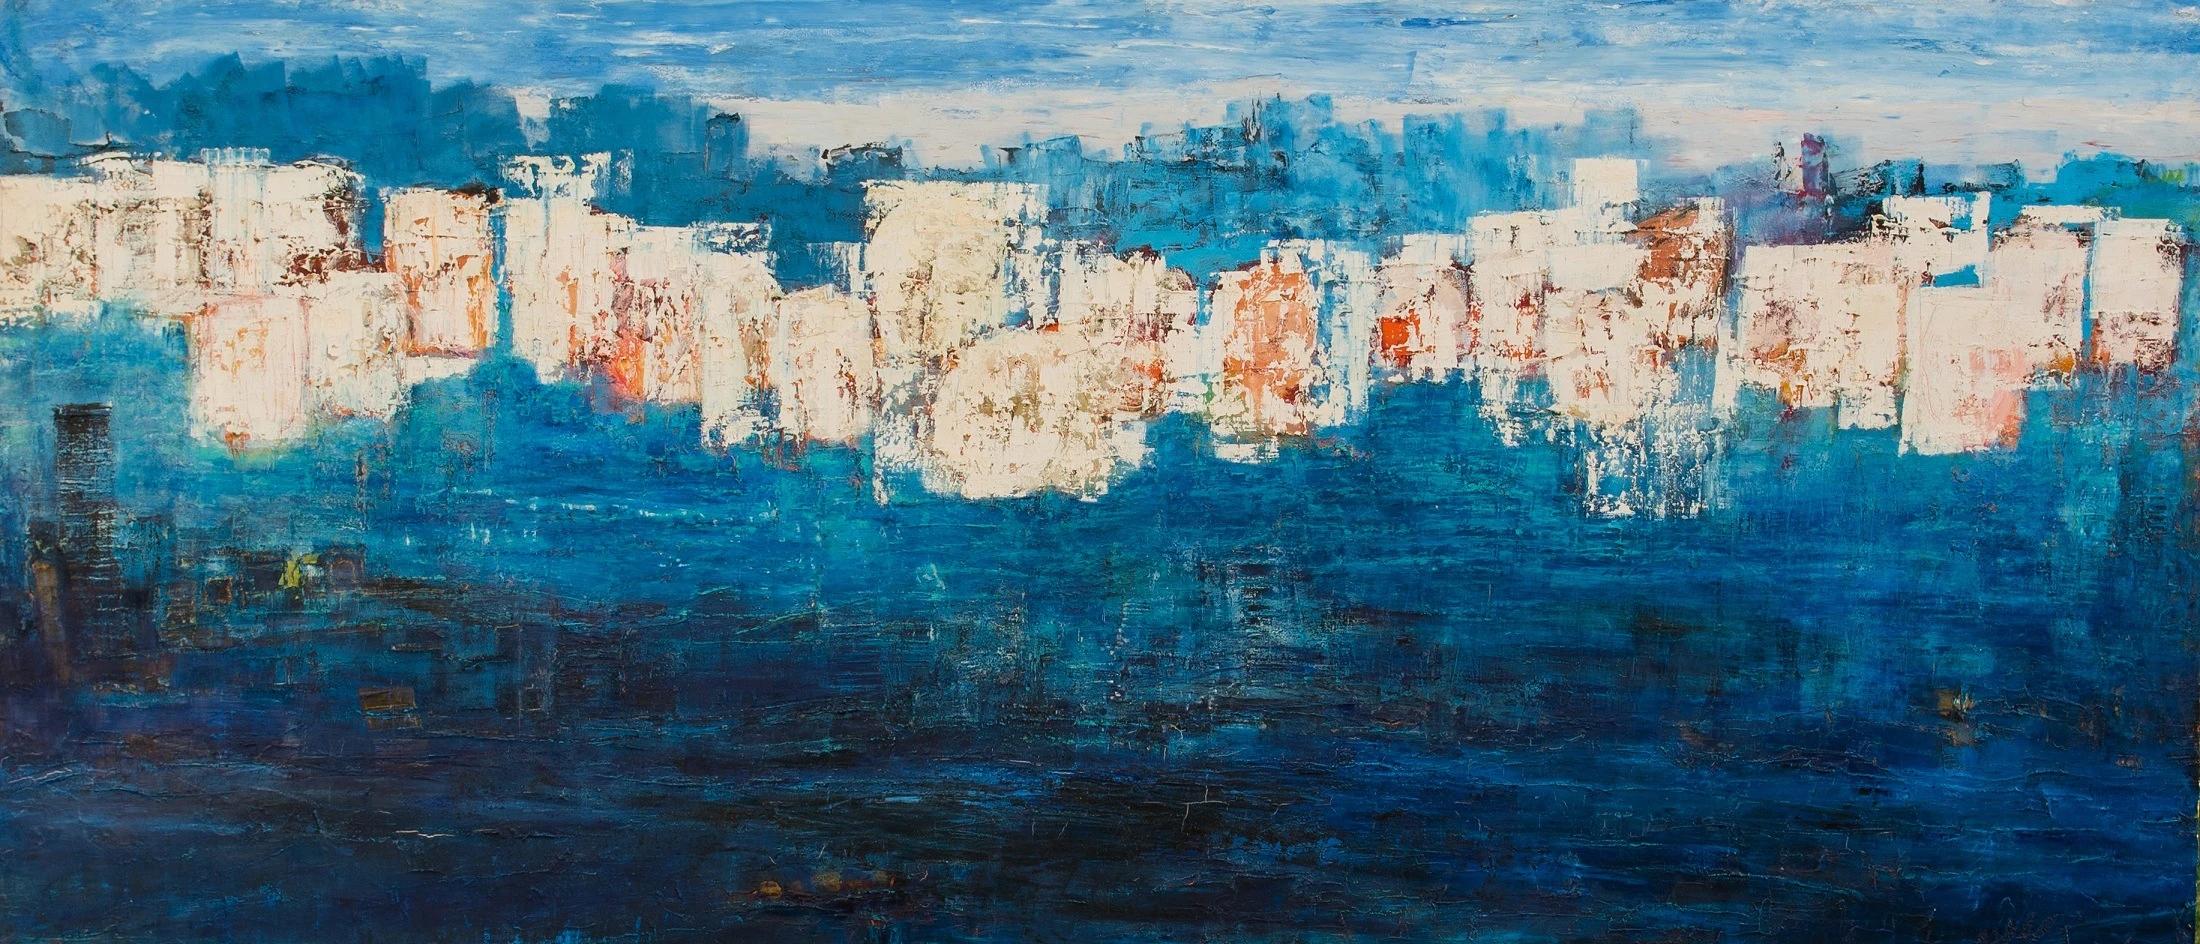 Abstraktes Gemälde „ Submerged“ in Mischtechnik 67" x 149" Zoll von Ahmed Farid

Mischtechnik auf Leinwand

Farid wurde 1950 in Kairo, Ägypten, geboren, wo er heute lebt und arbeitet. Er ist ein autodidaktischer ägyptischer Maler, der eine private